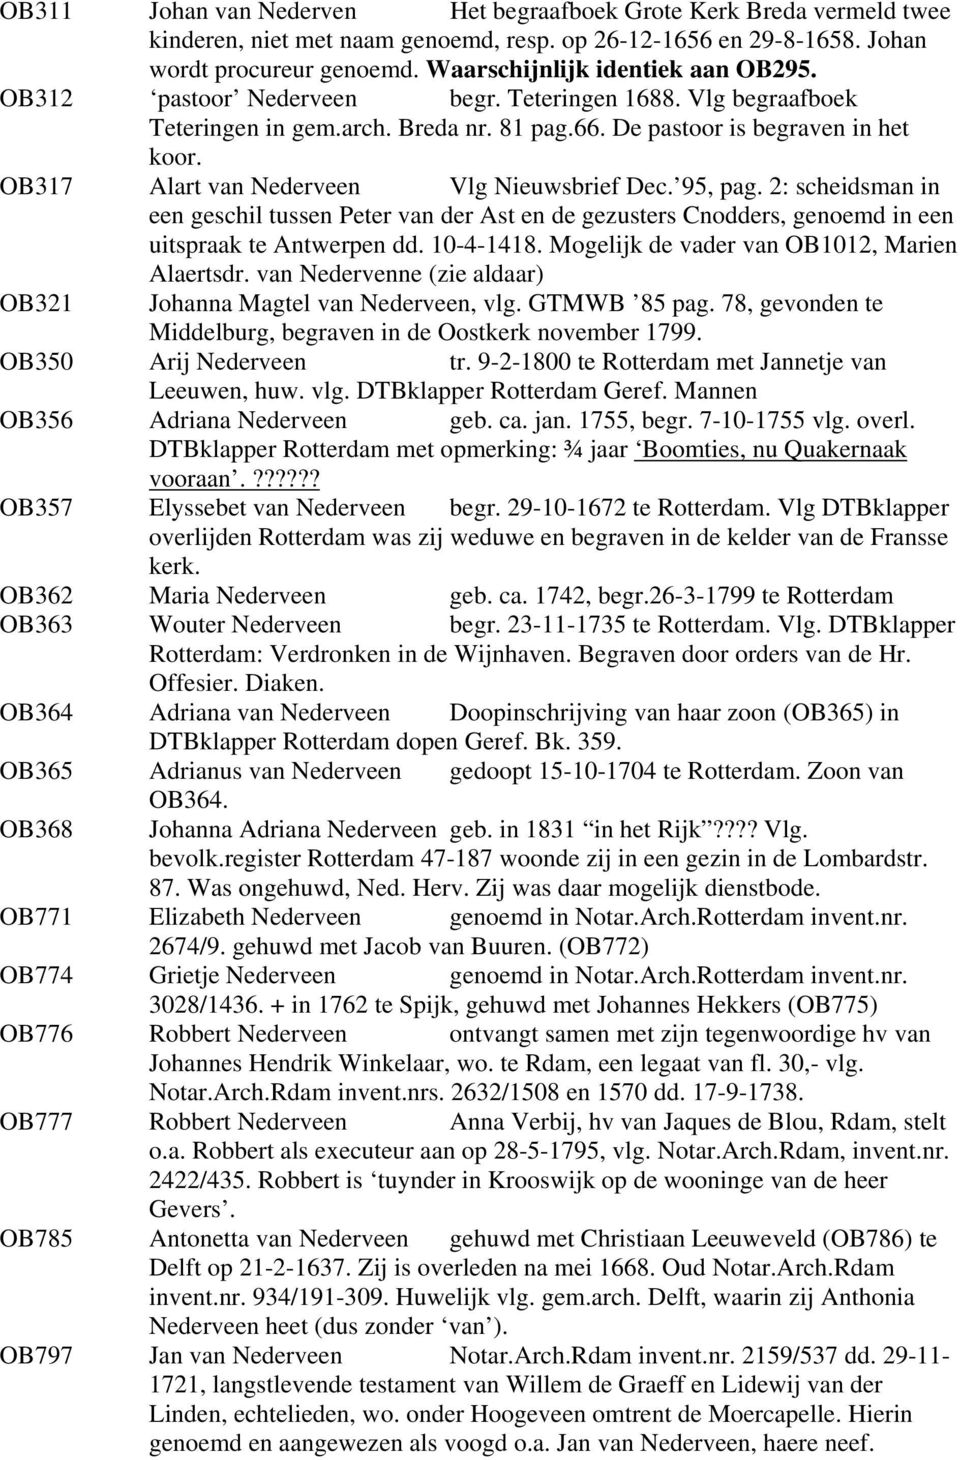 OB317 Alart van Nederveen Vlg Nieuwsbrief Dec. 95, pag. 2: scheidsman in een geschil tussen Peter van der Ast en de gezusters Cnodders, genoemd in een uitspraak te Antwerpen dd. 10-4-1418.